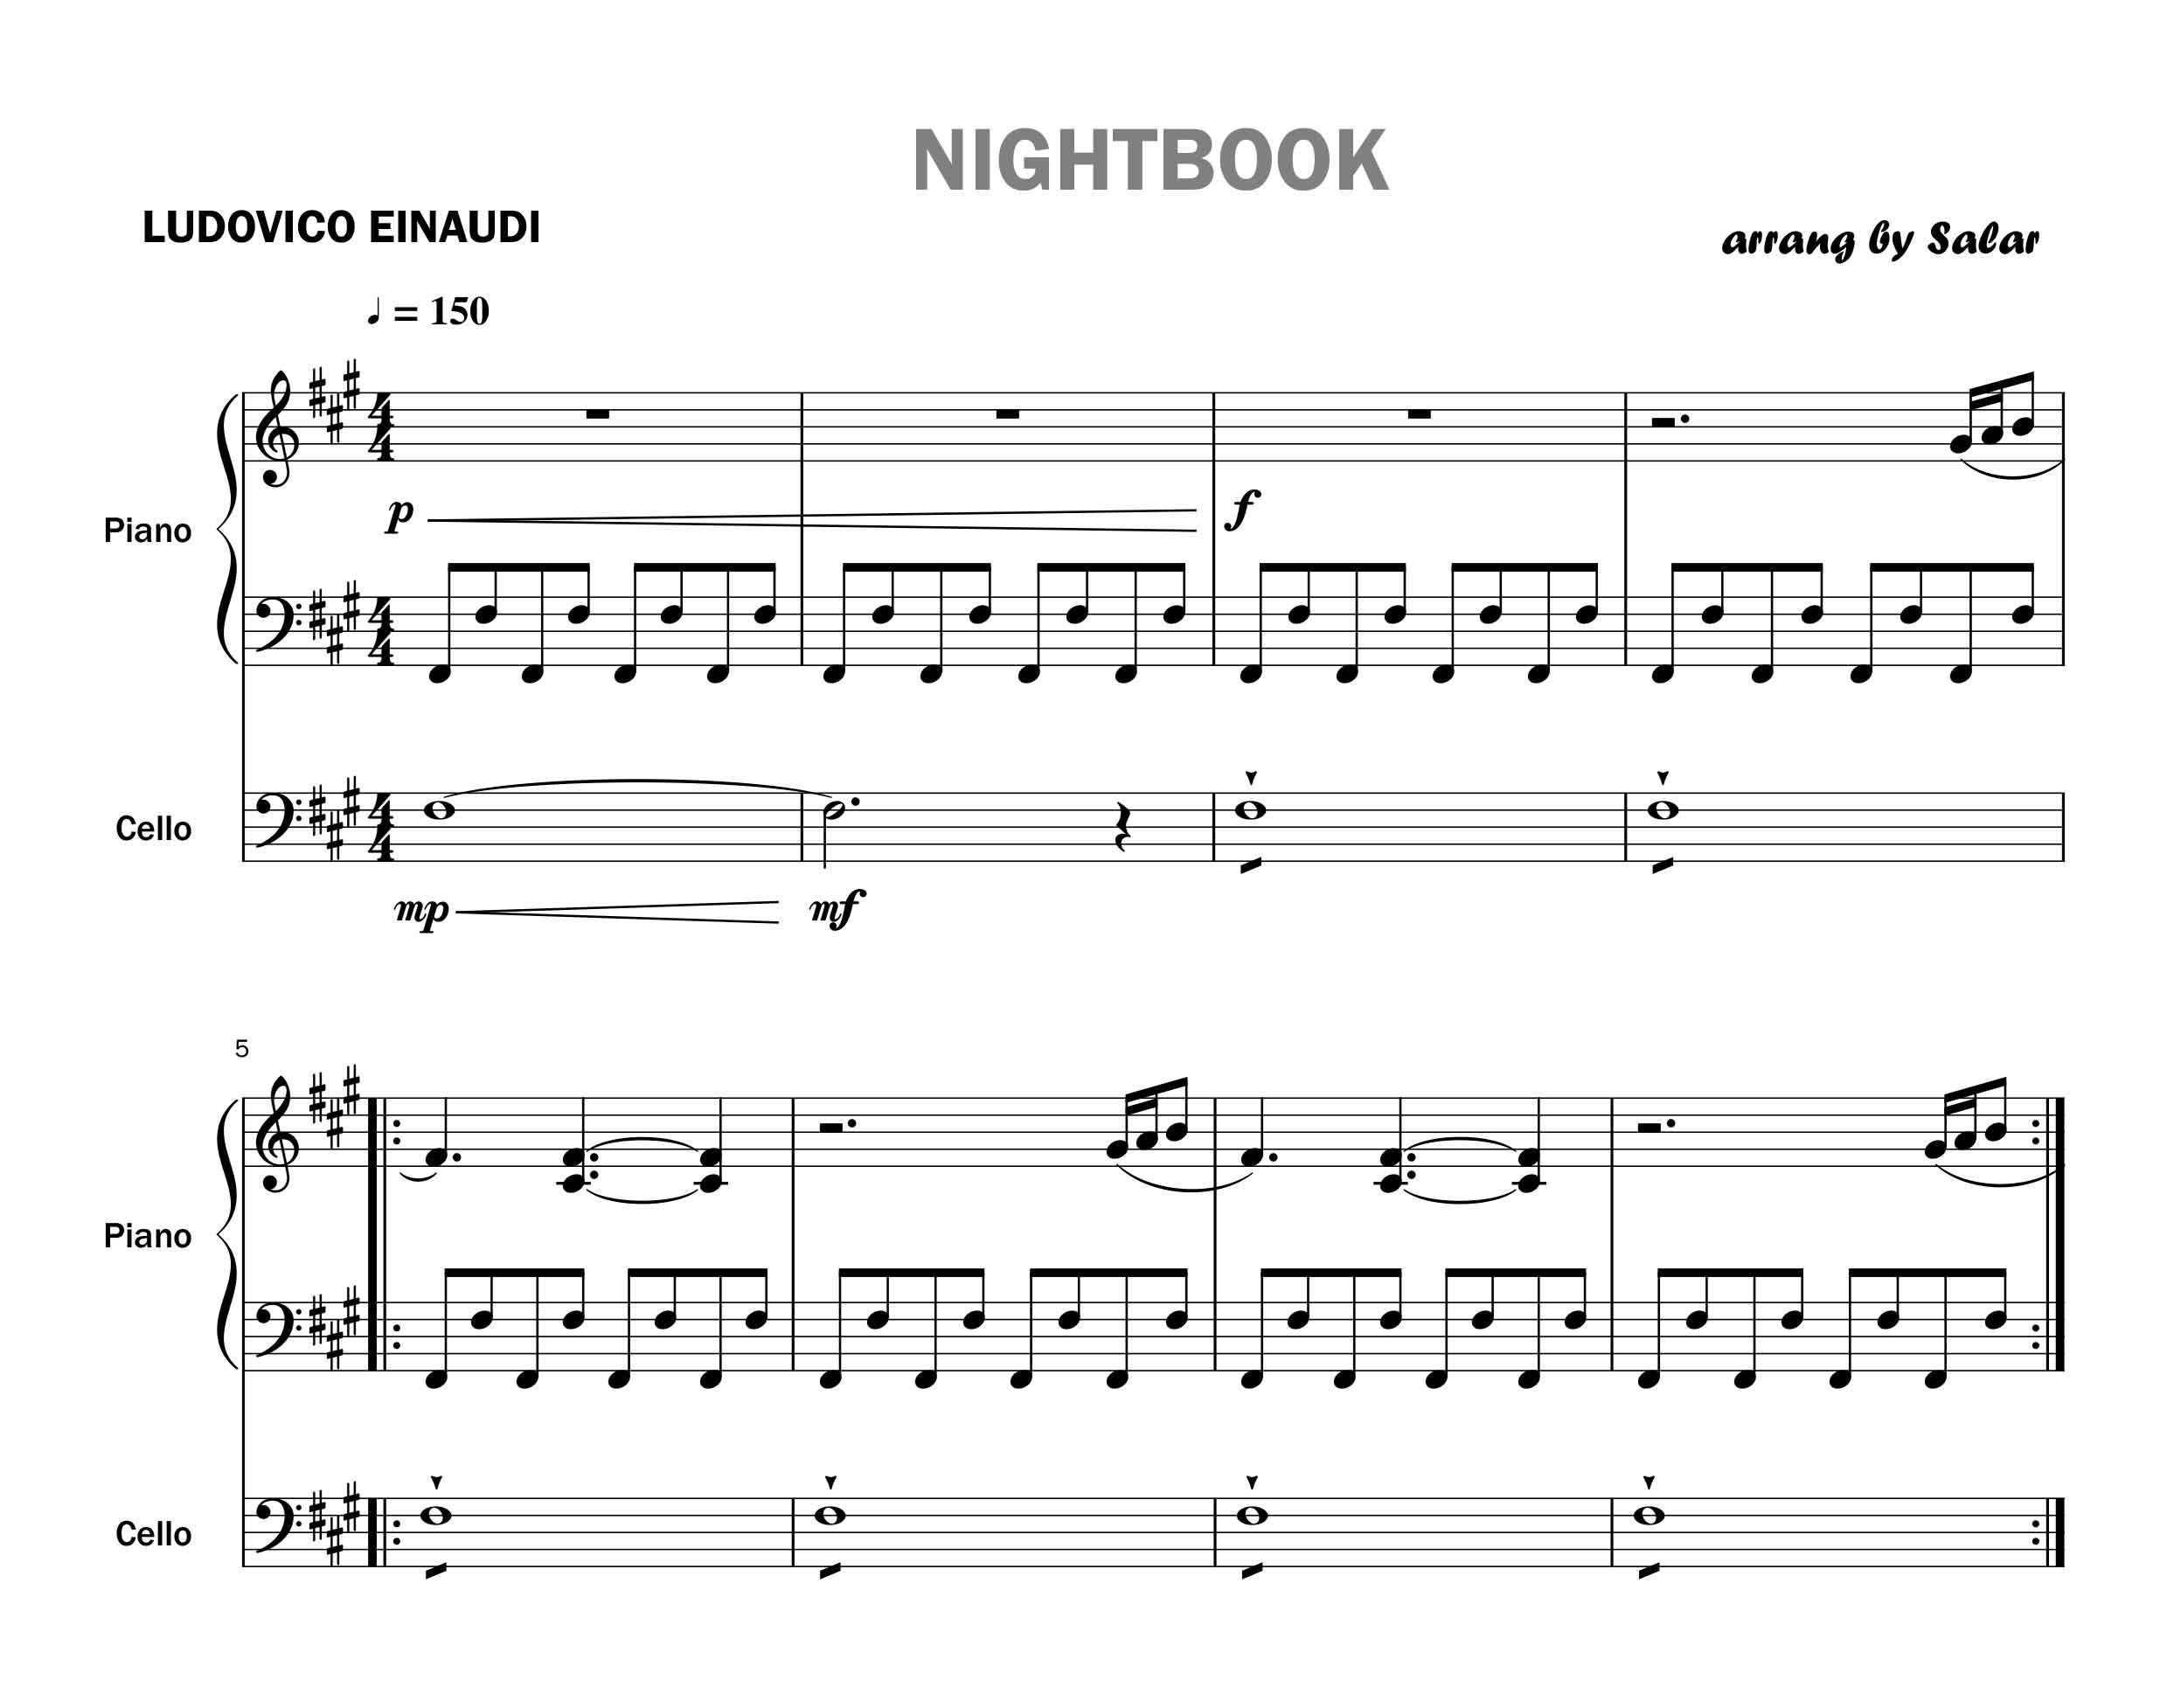 پارتیتور قطعه NightBook برای پیانو  ویولن و ویولن سل